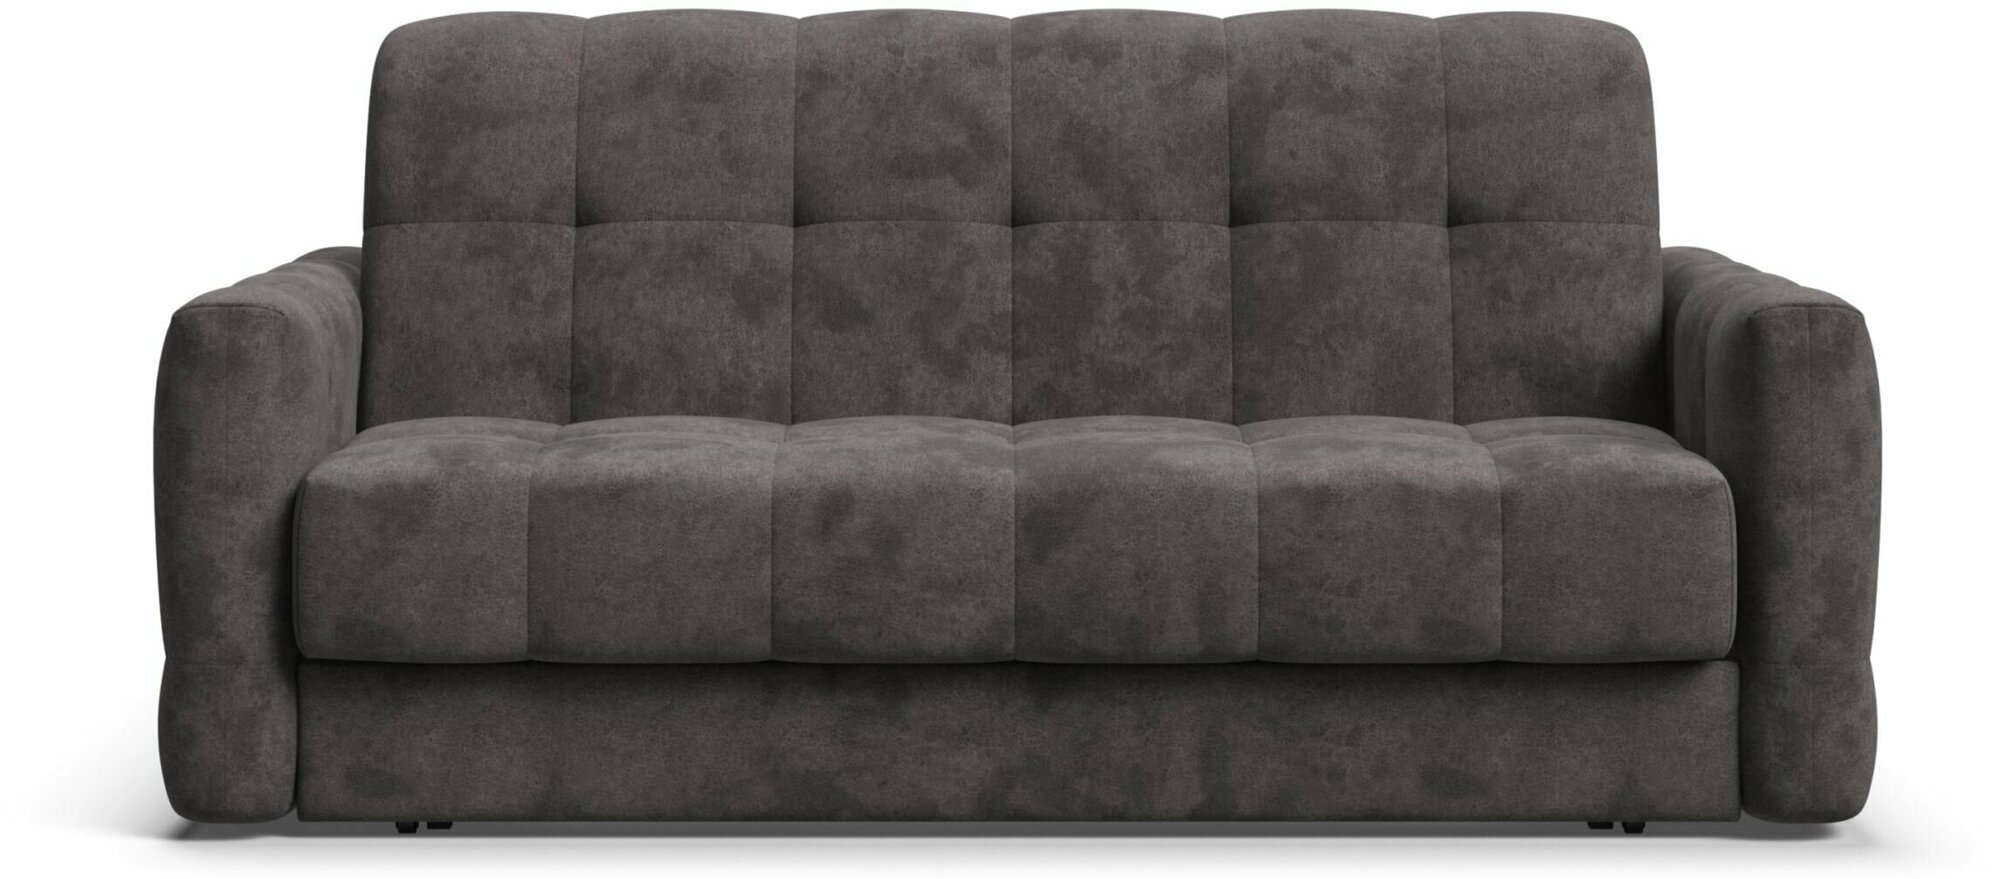 Выкатной диван-кровать с ящиком для хранения Boss Sleep 160, аккордеон, велюр Alkantara серый, 203x119x91 см